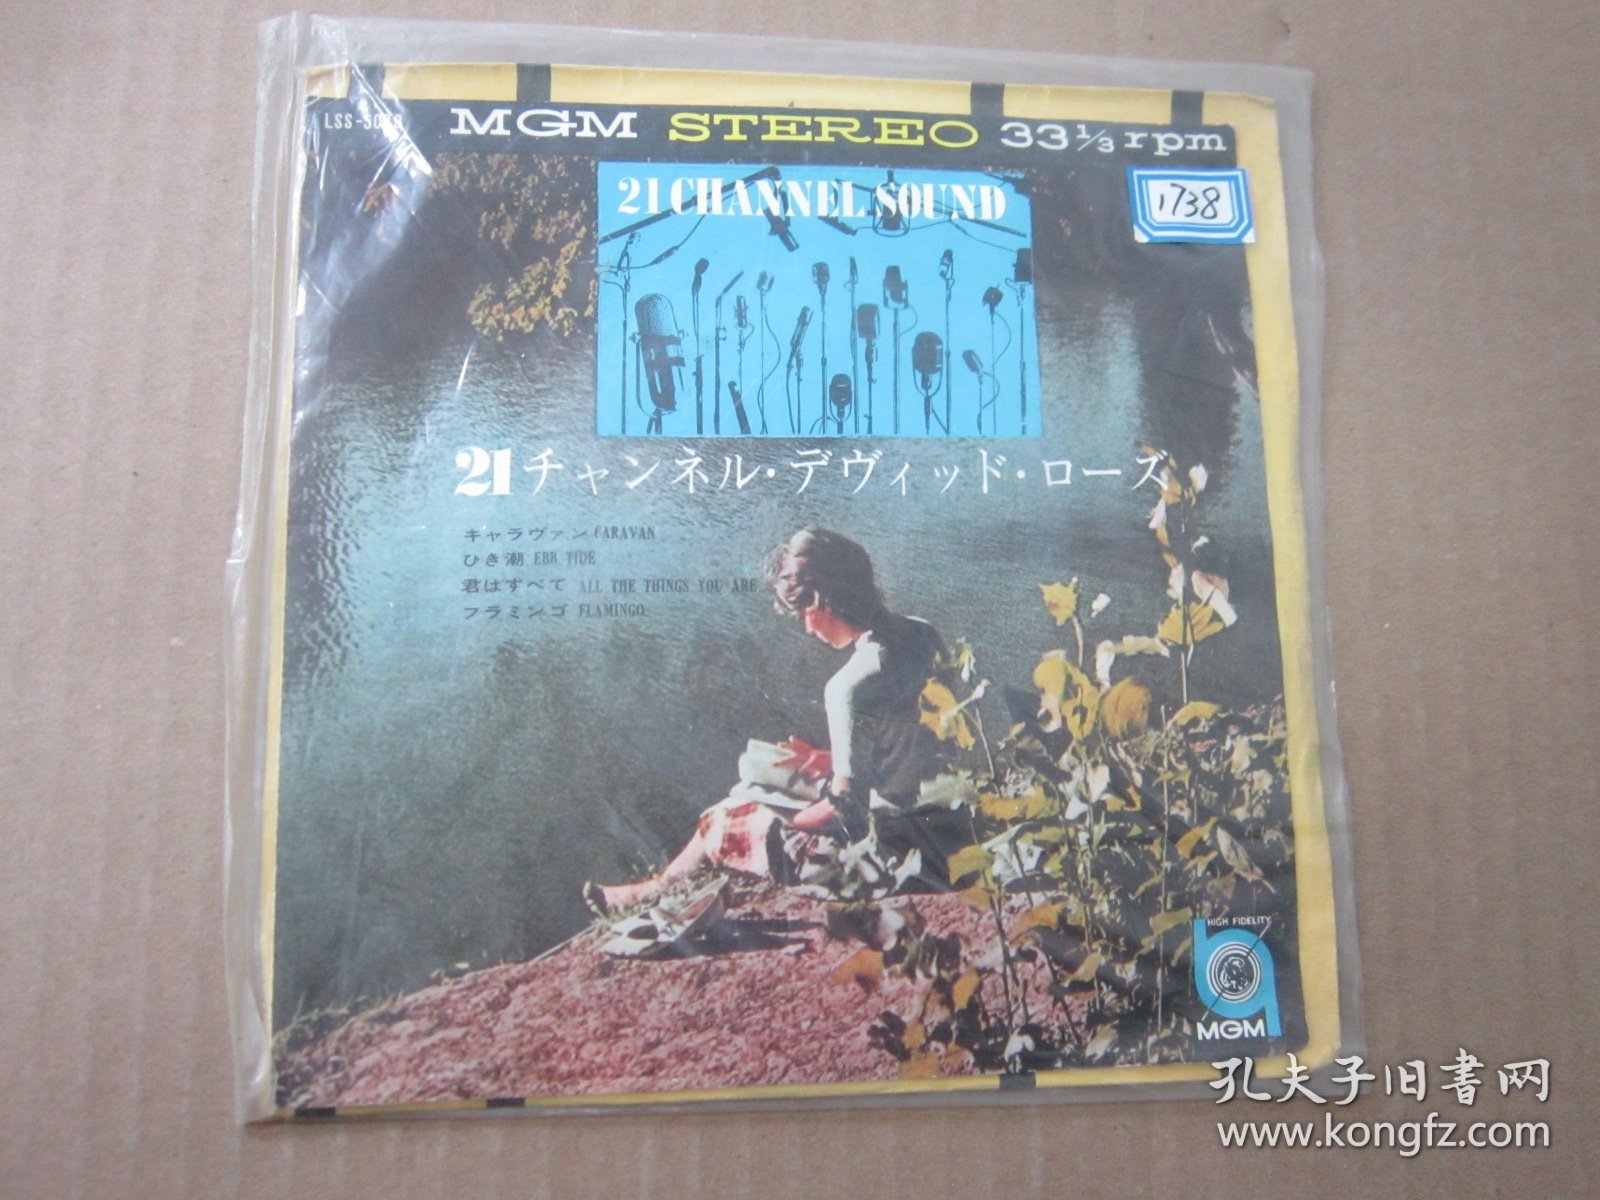 主题音乐 TWENTY ONE CHANNEL SOUND DAVID ROSE AND HIS ORCHESTRA 7寸黑胶LP唱片